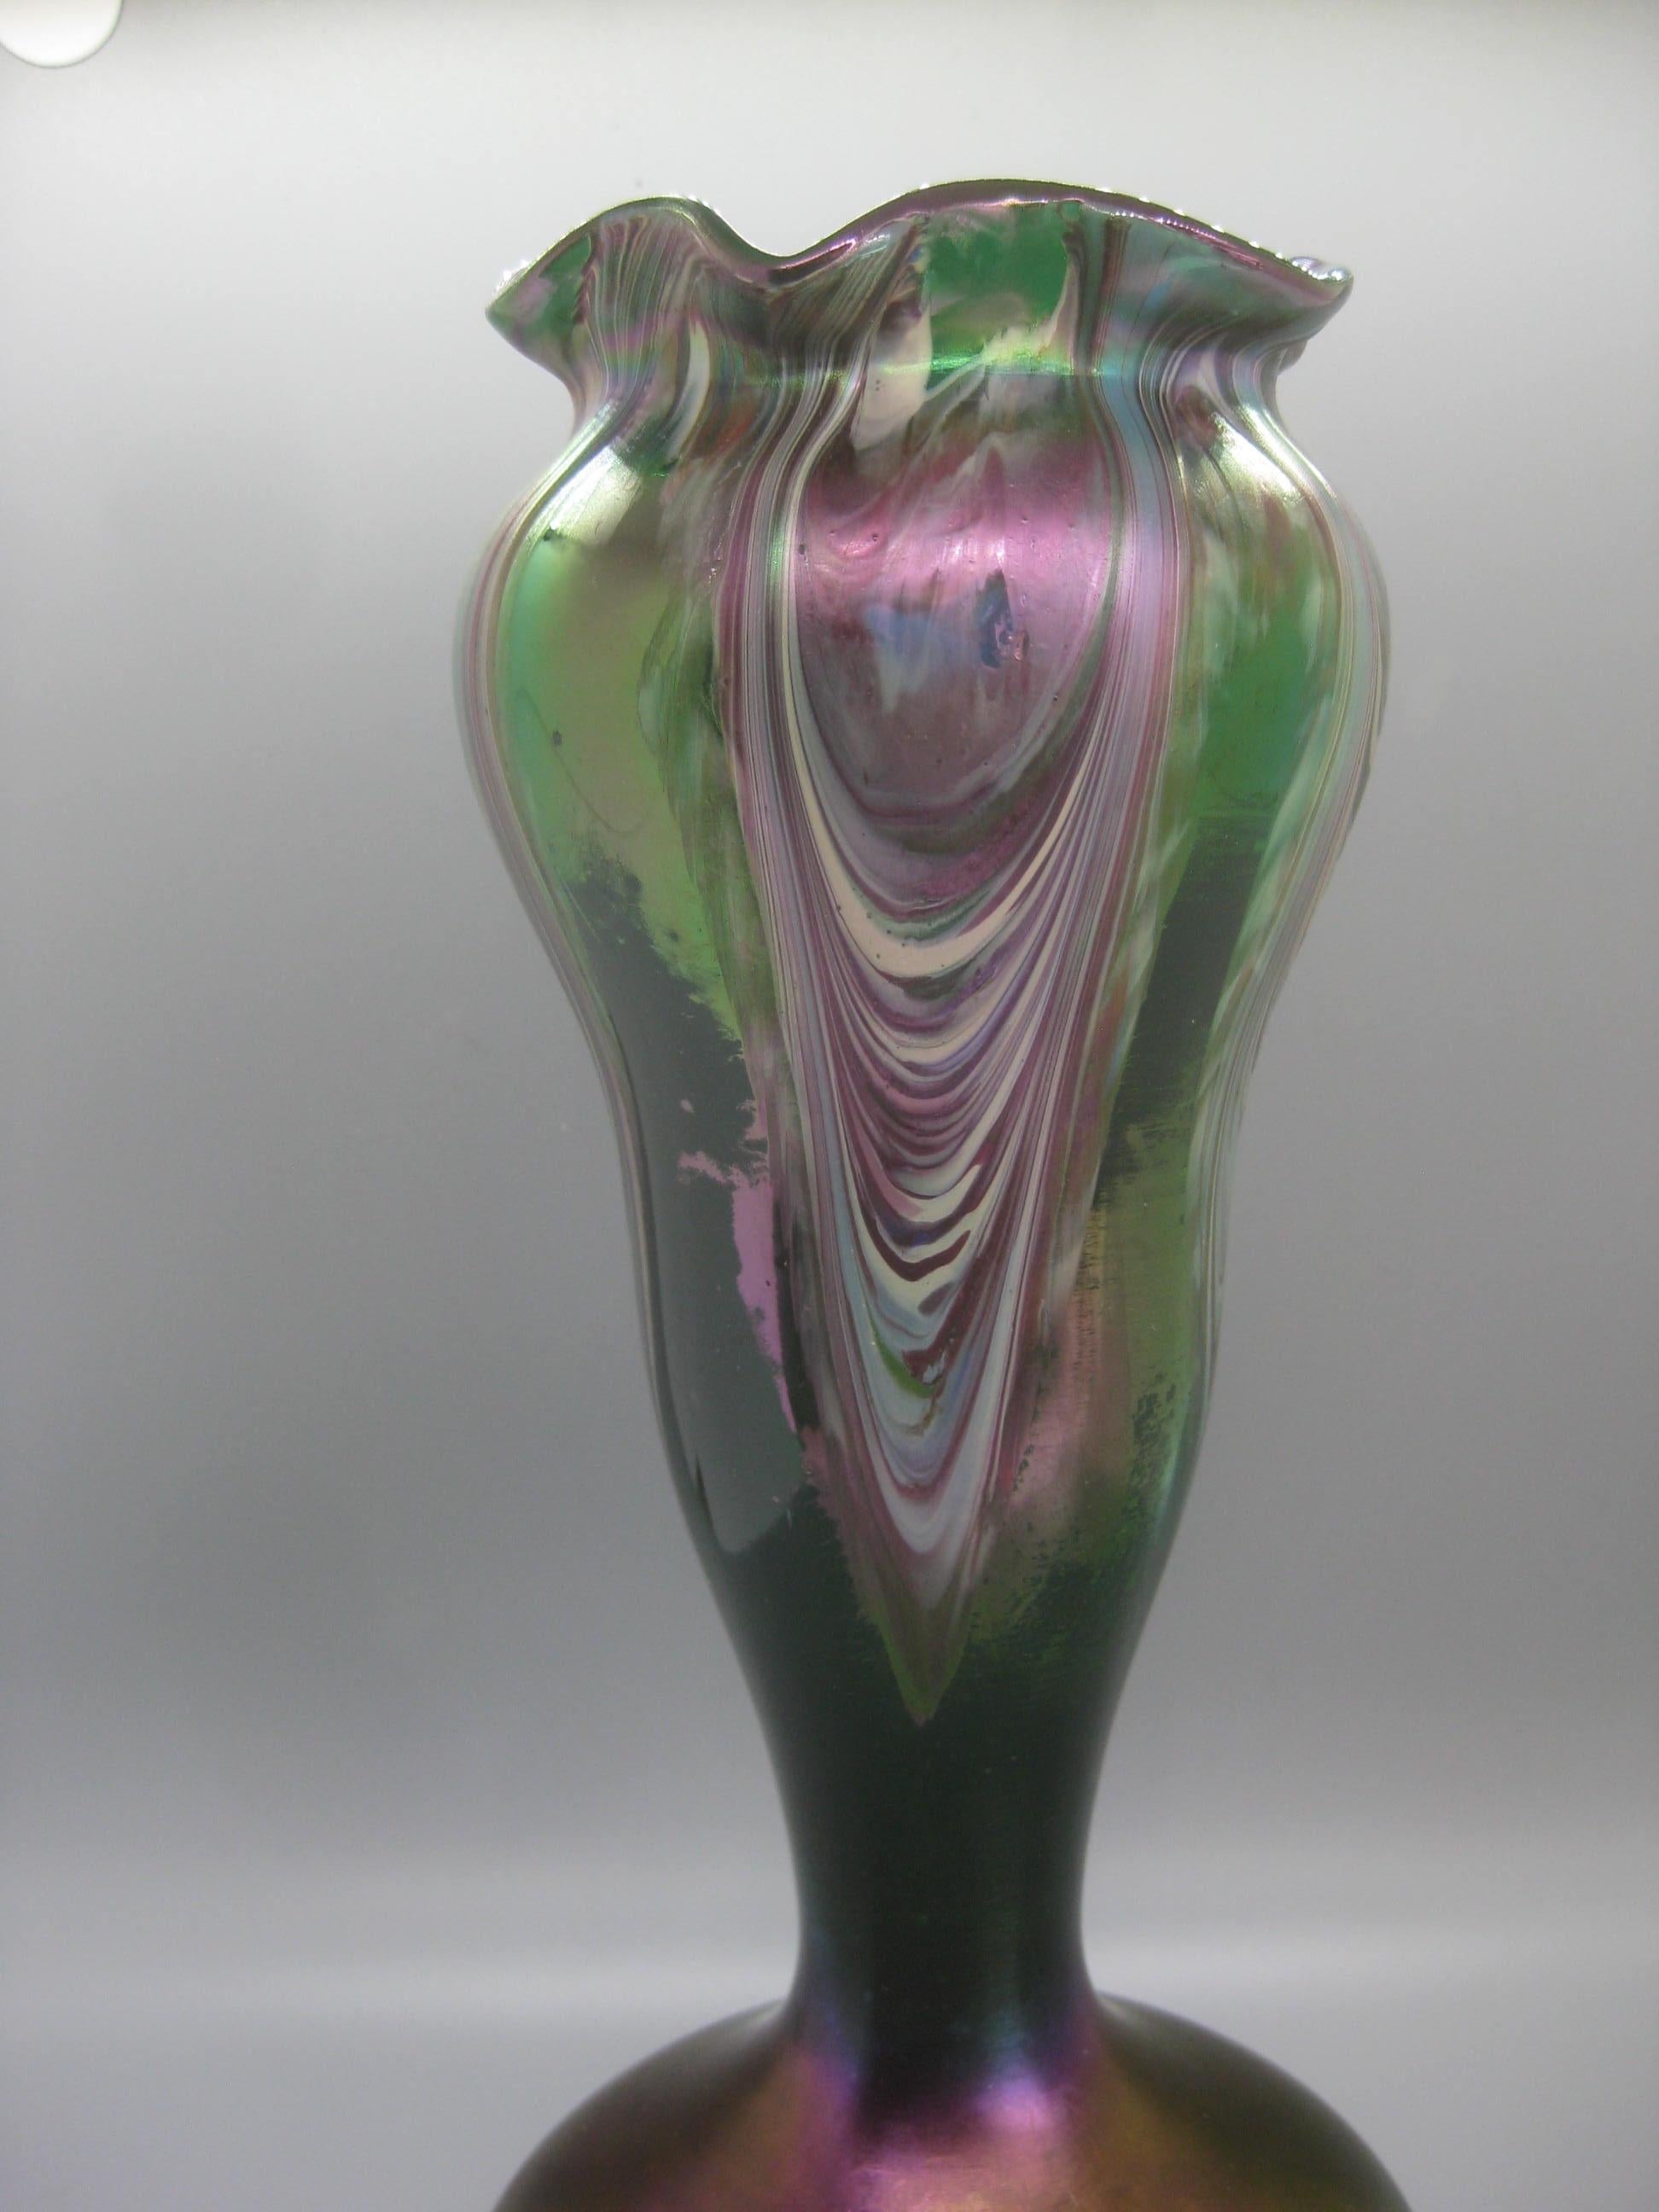 Superbe vase en verre d'art Art Nouveau tchèque de Bohème à plumes irisées par Josef Rindskopf, vers le début des années 1900. Le vase a une couleur et un design merveilleux. Corps en verre transparent vert avec un motif opaque de plumes tirées.